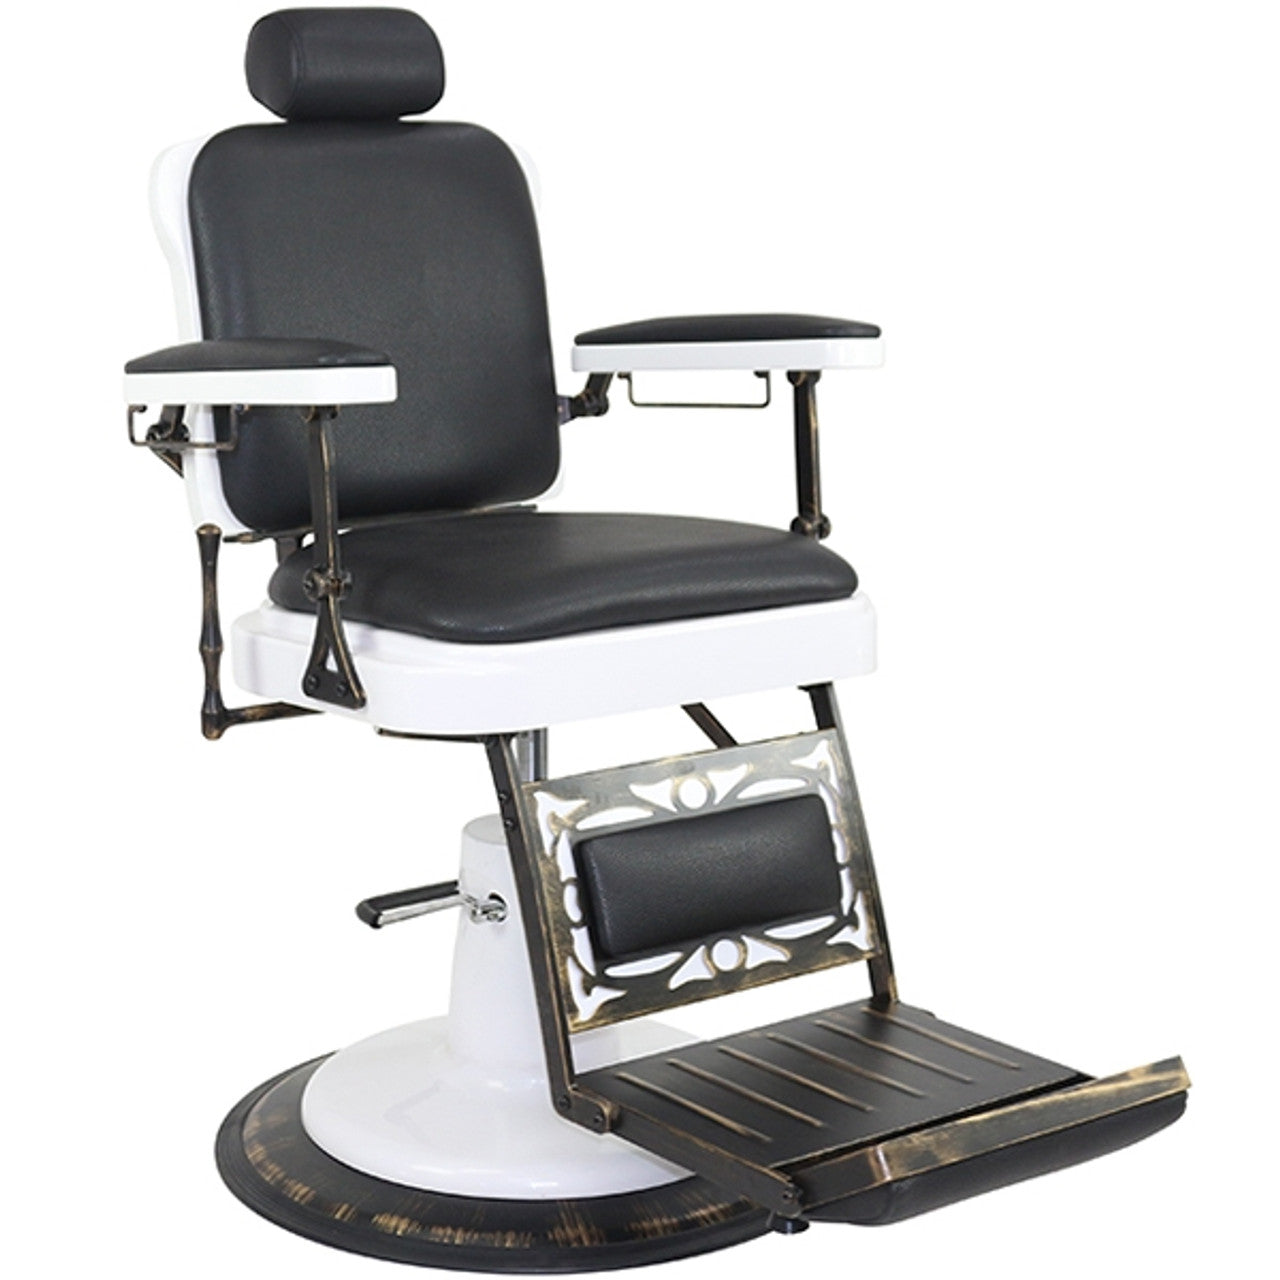 Joiken Chicago Barber Chair - Black